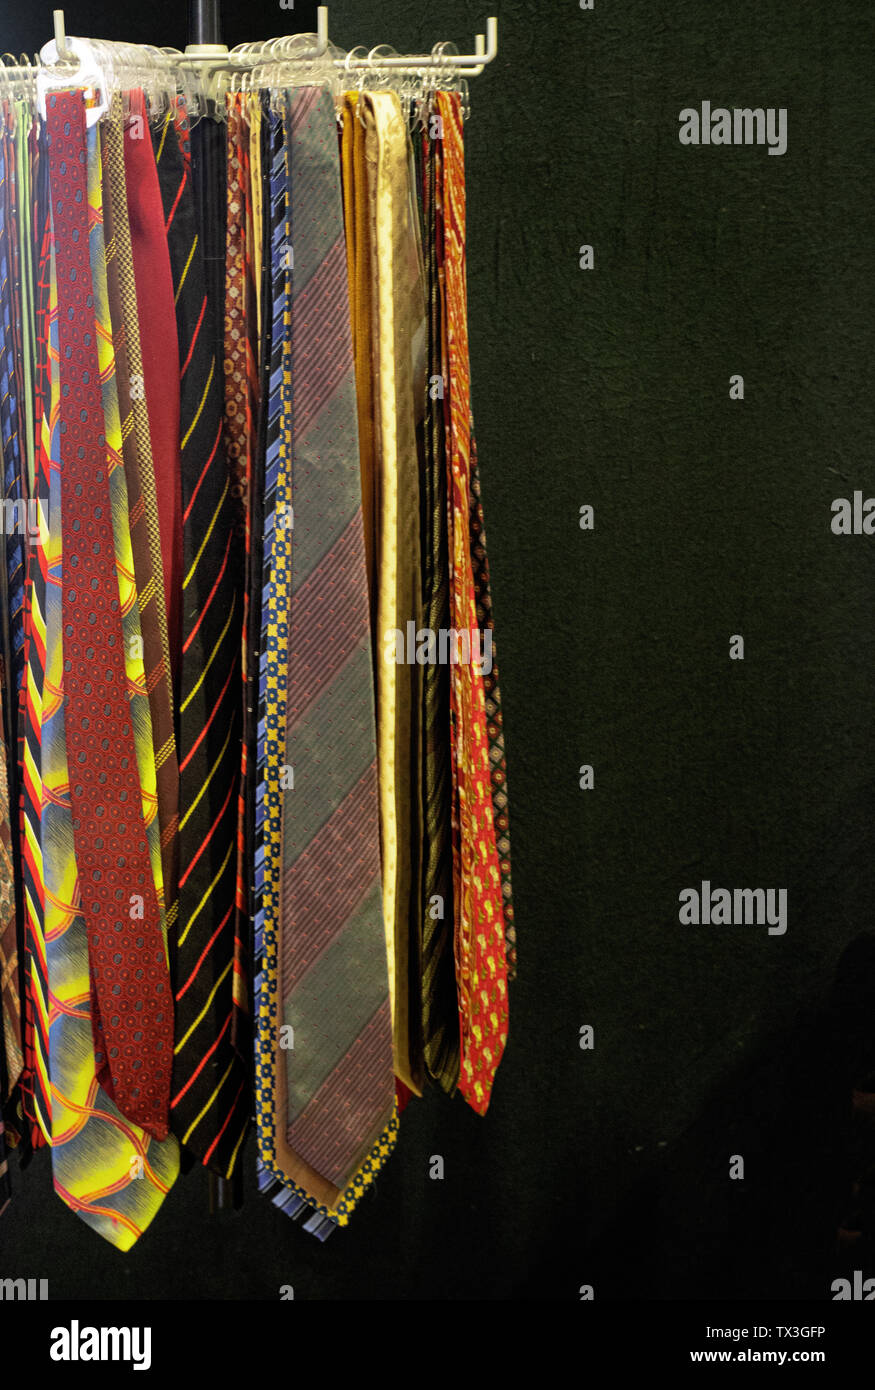 Milano - Italia. Cravatte Vintage presso il mercato delle pulci Foto stock  - Alamy